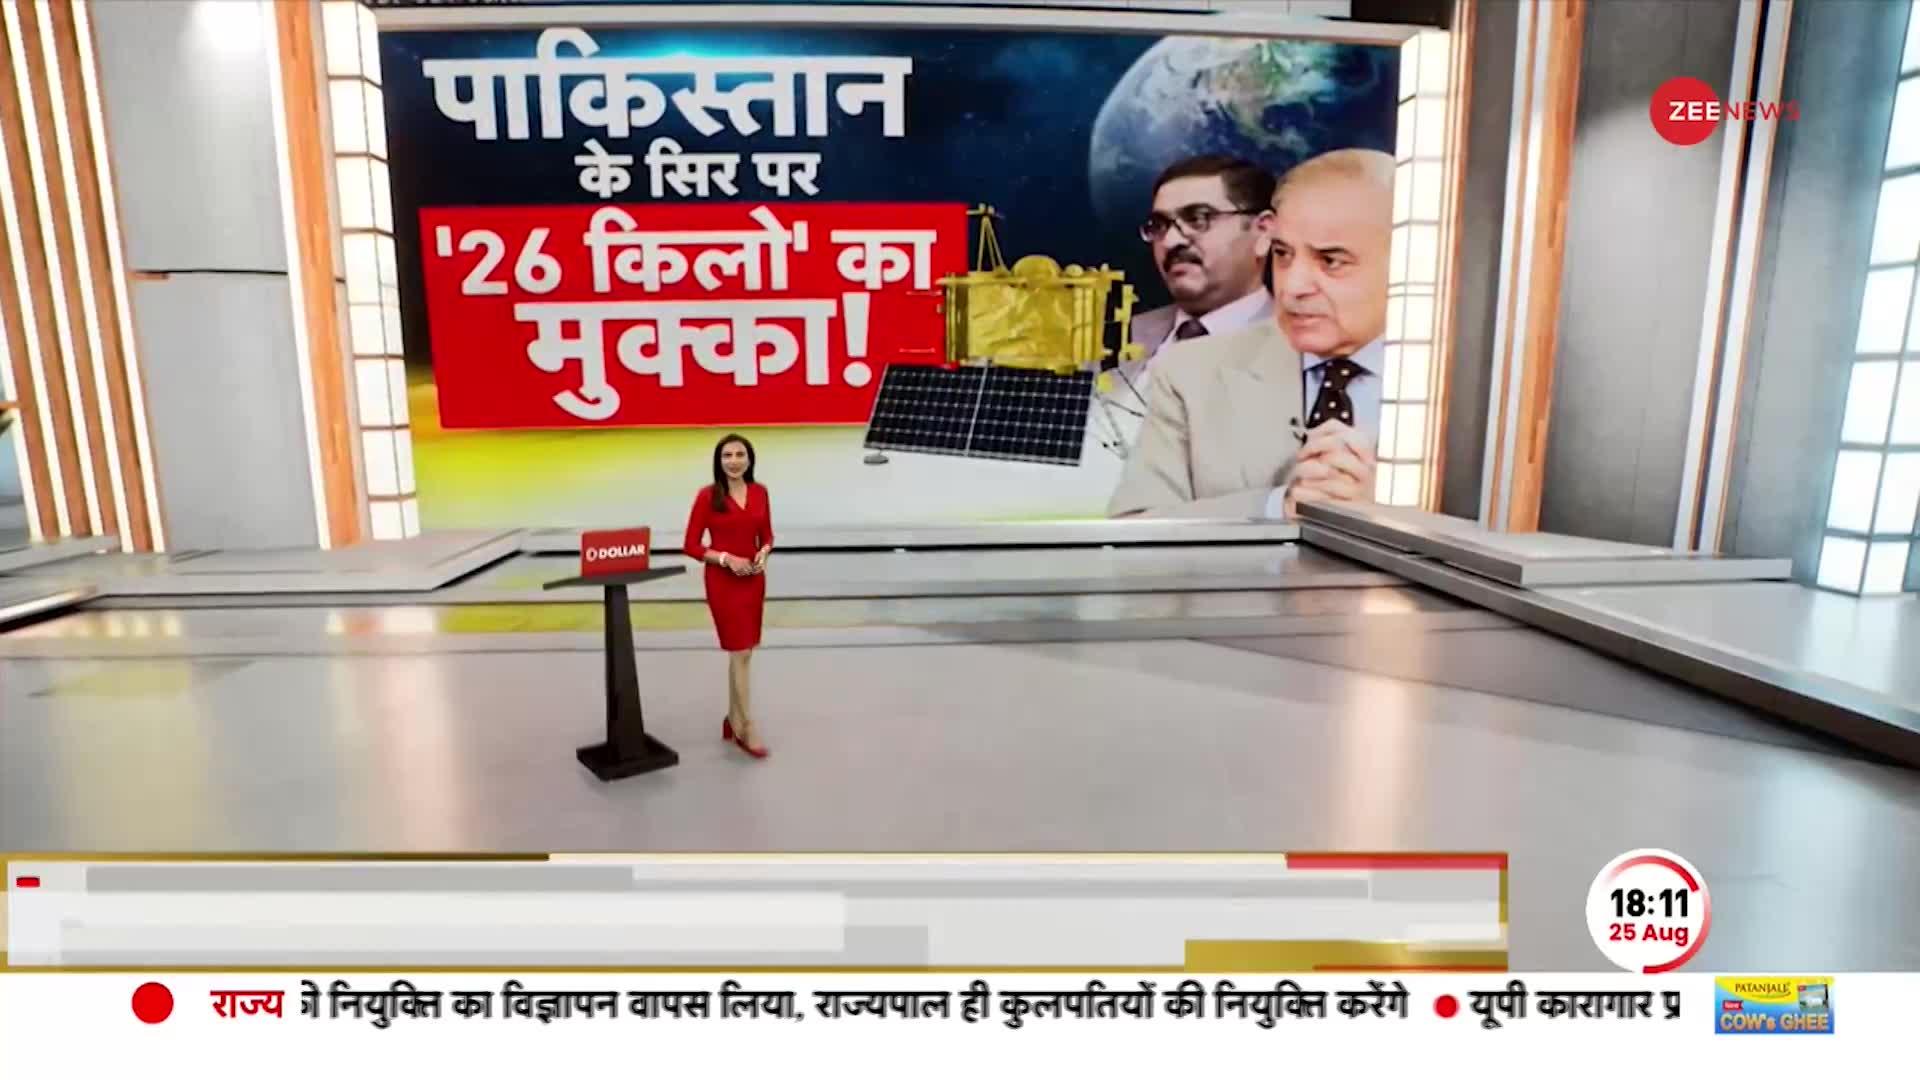 Deshhit Chandrayaan-3 News: चंद्रयान से चीन-पाकिस्तान परेशान!